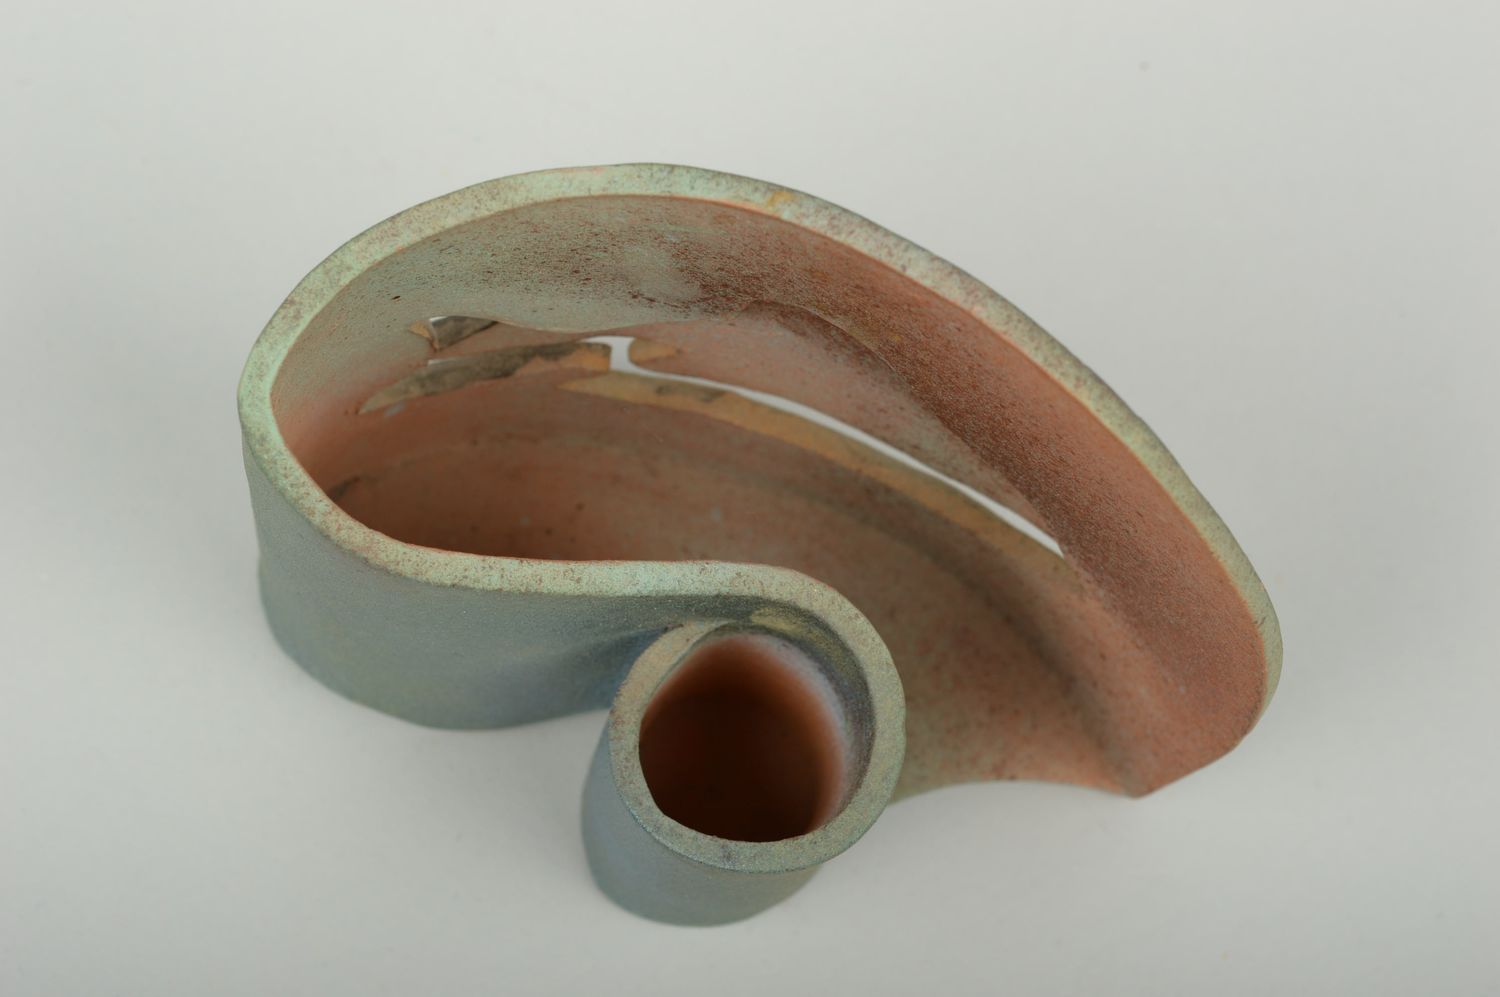 Салфетница ручной работы держатель для салфеток оригинальный подарок из керамики фото 4